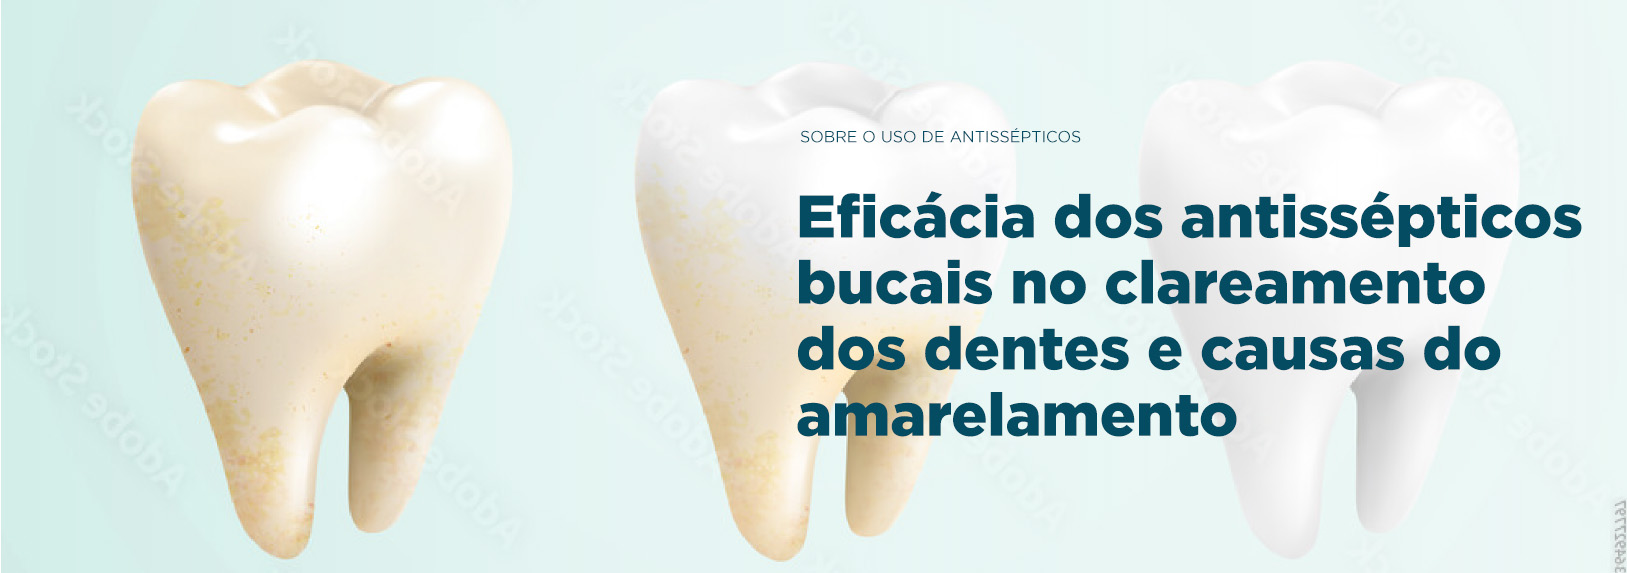 Banner Eficácia dos antissépticos bucais no clareamento dos dentes e causas de amarelamento | Odontologia | J&J